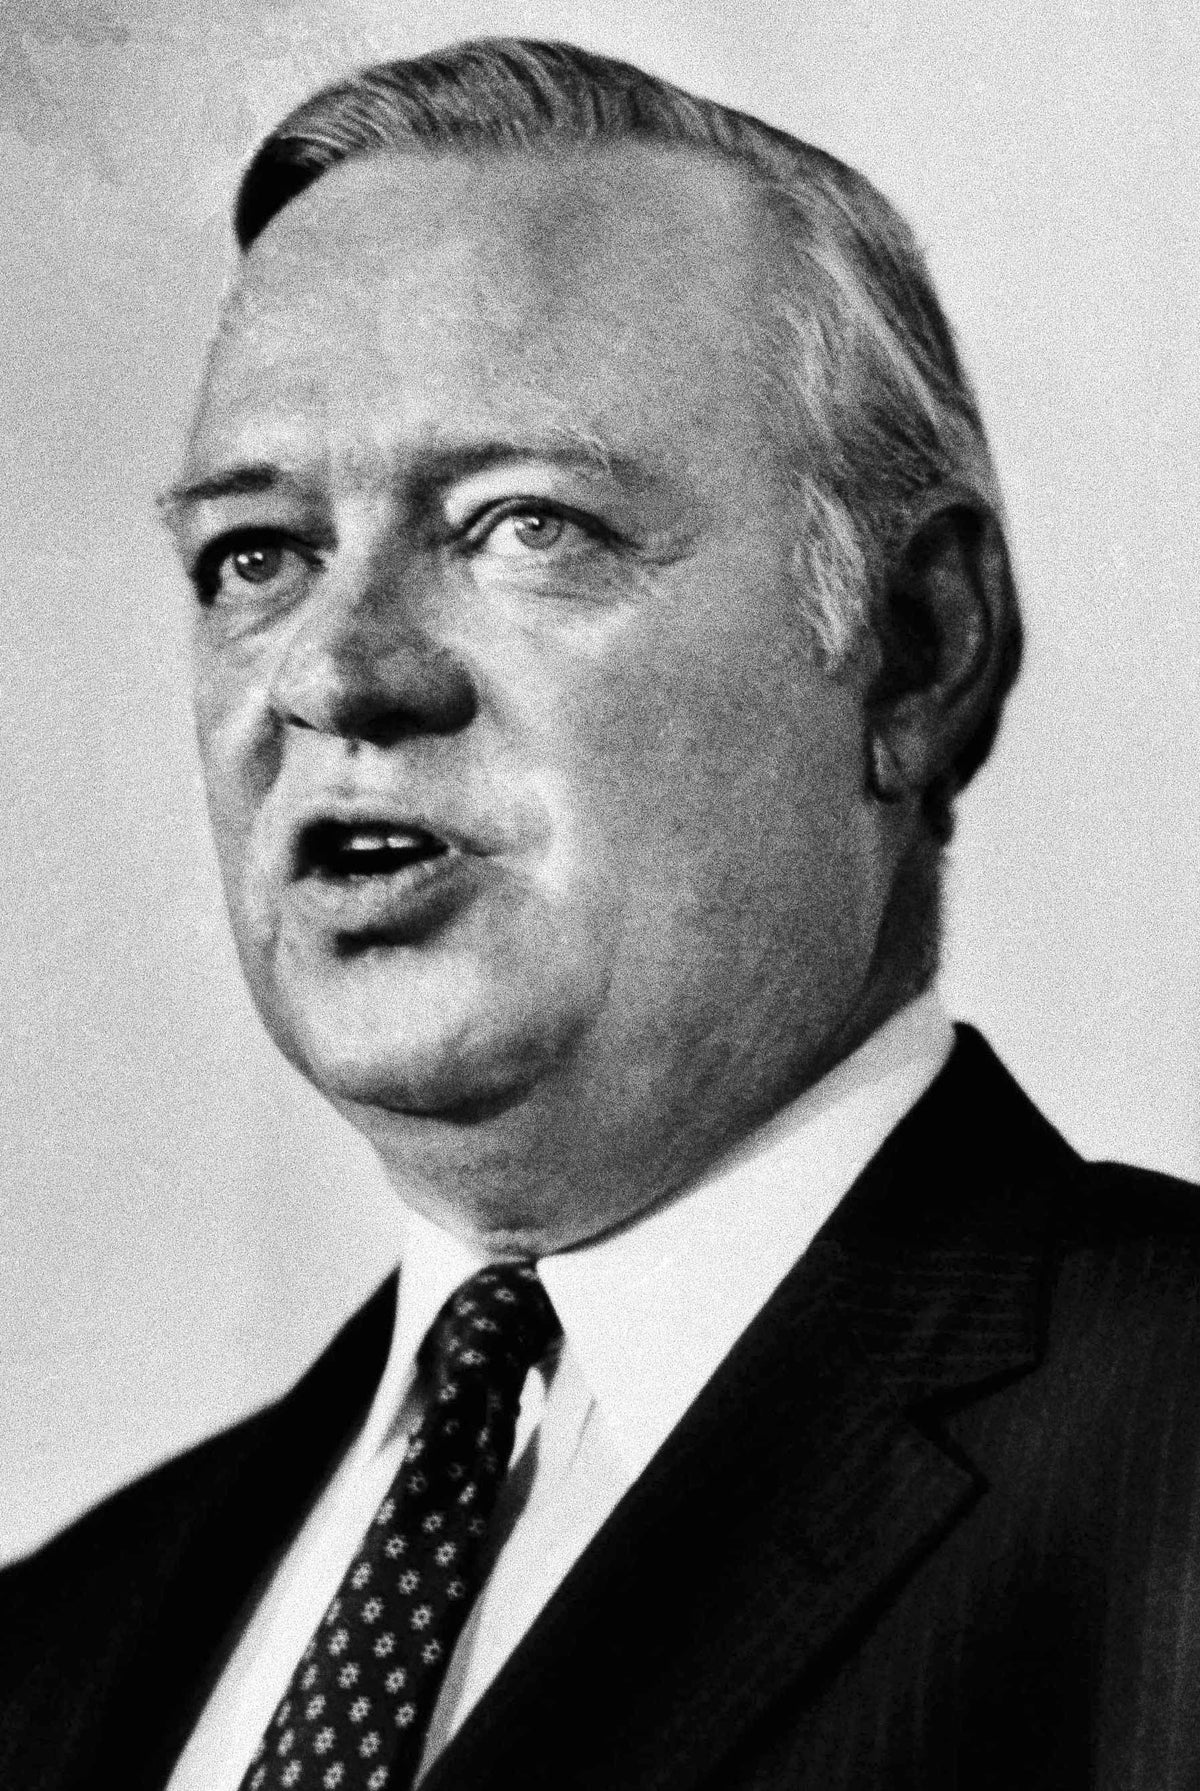 N. Carolina kongre üyesi, kısaca senatör Broyhill 95 yaşında öldü